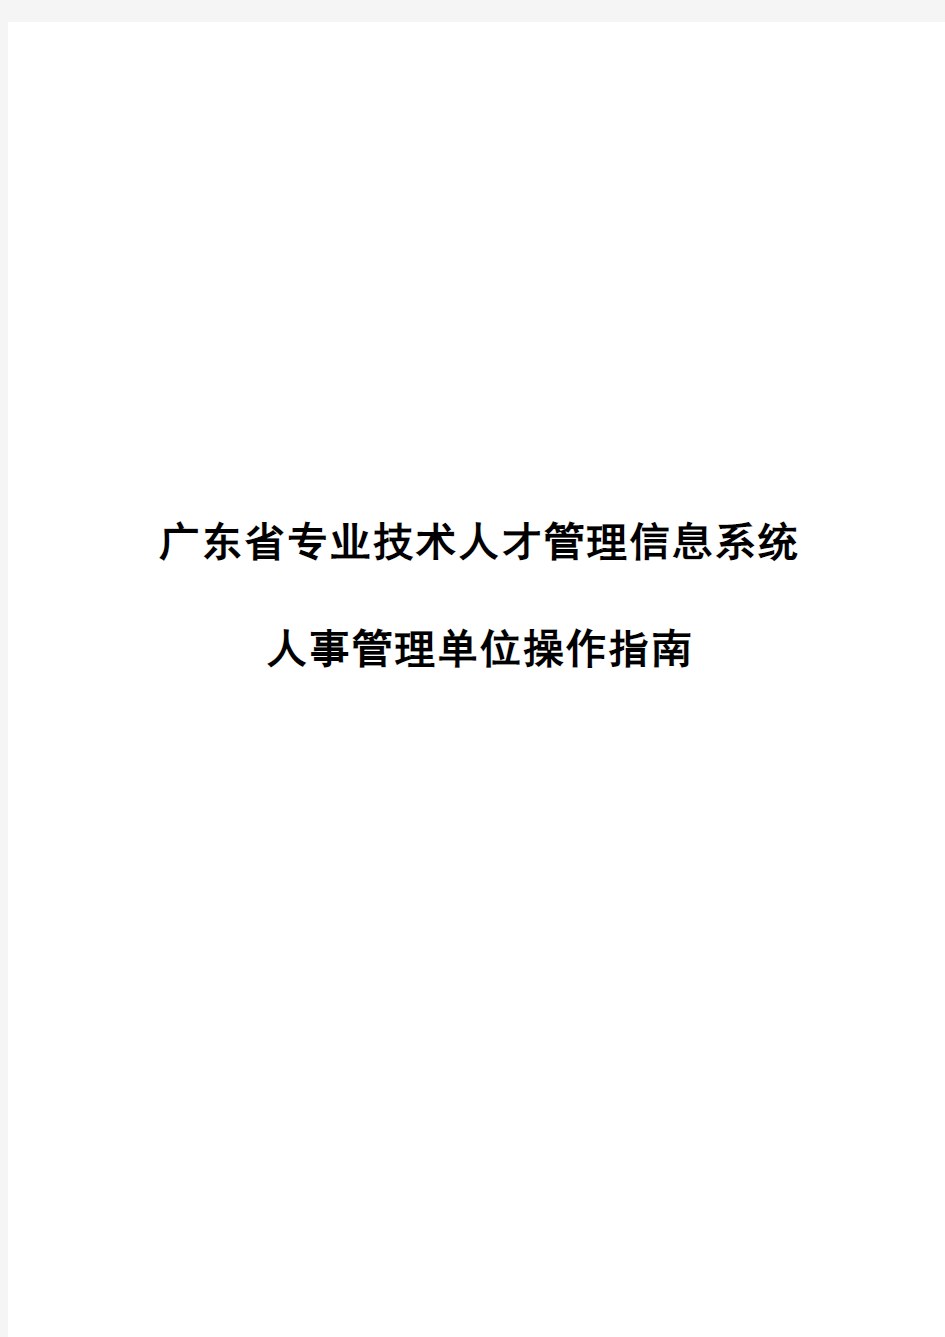 2016年广东省职称评审申报系统-人事管理单位